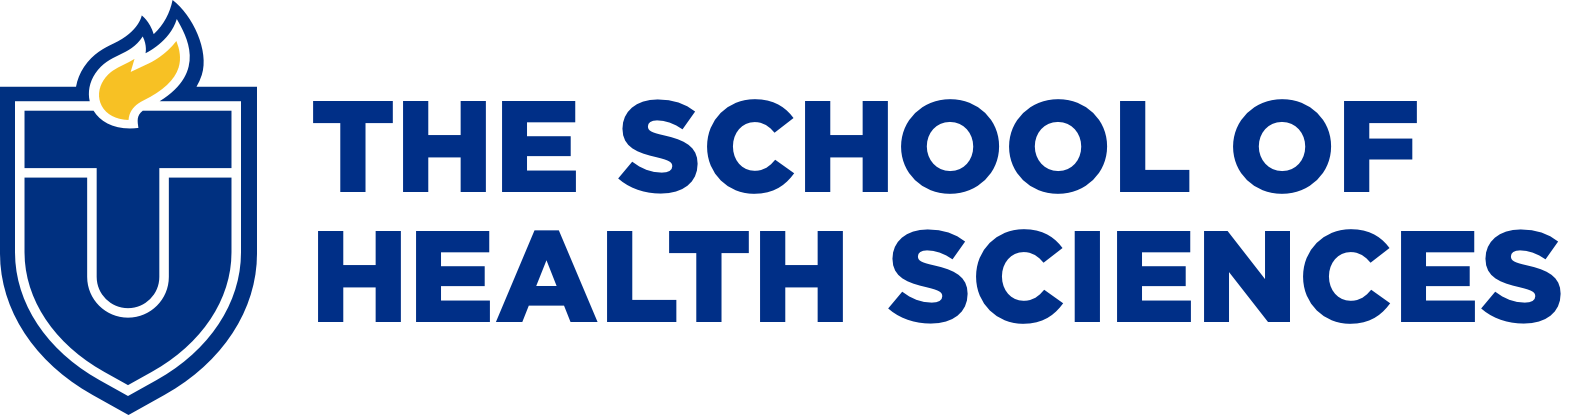 School of Health Sciences